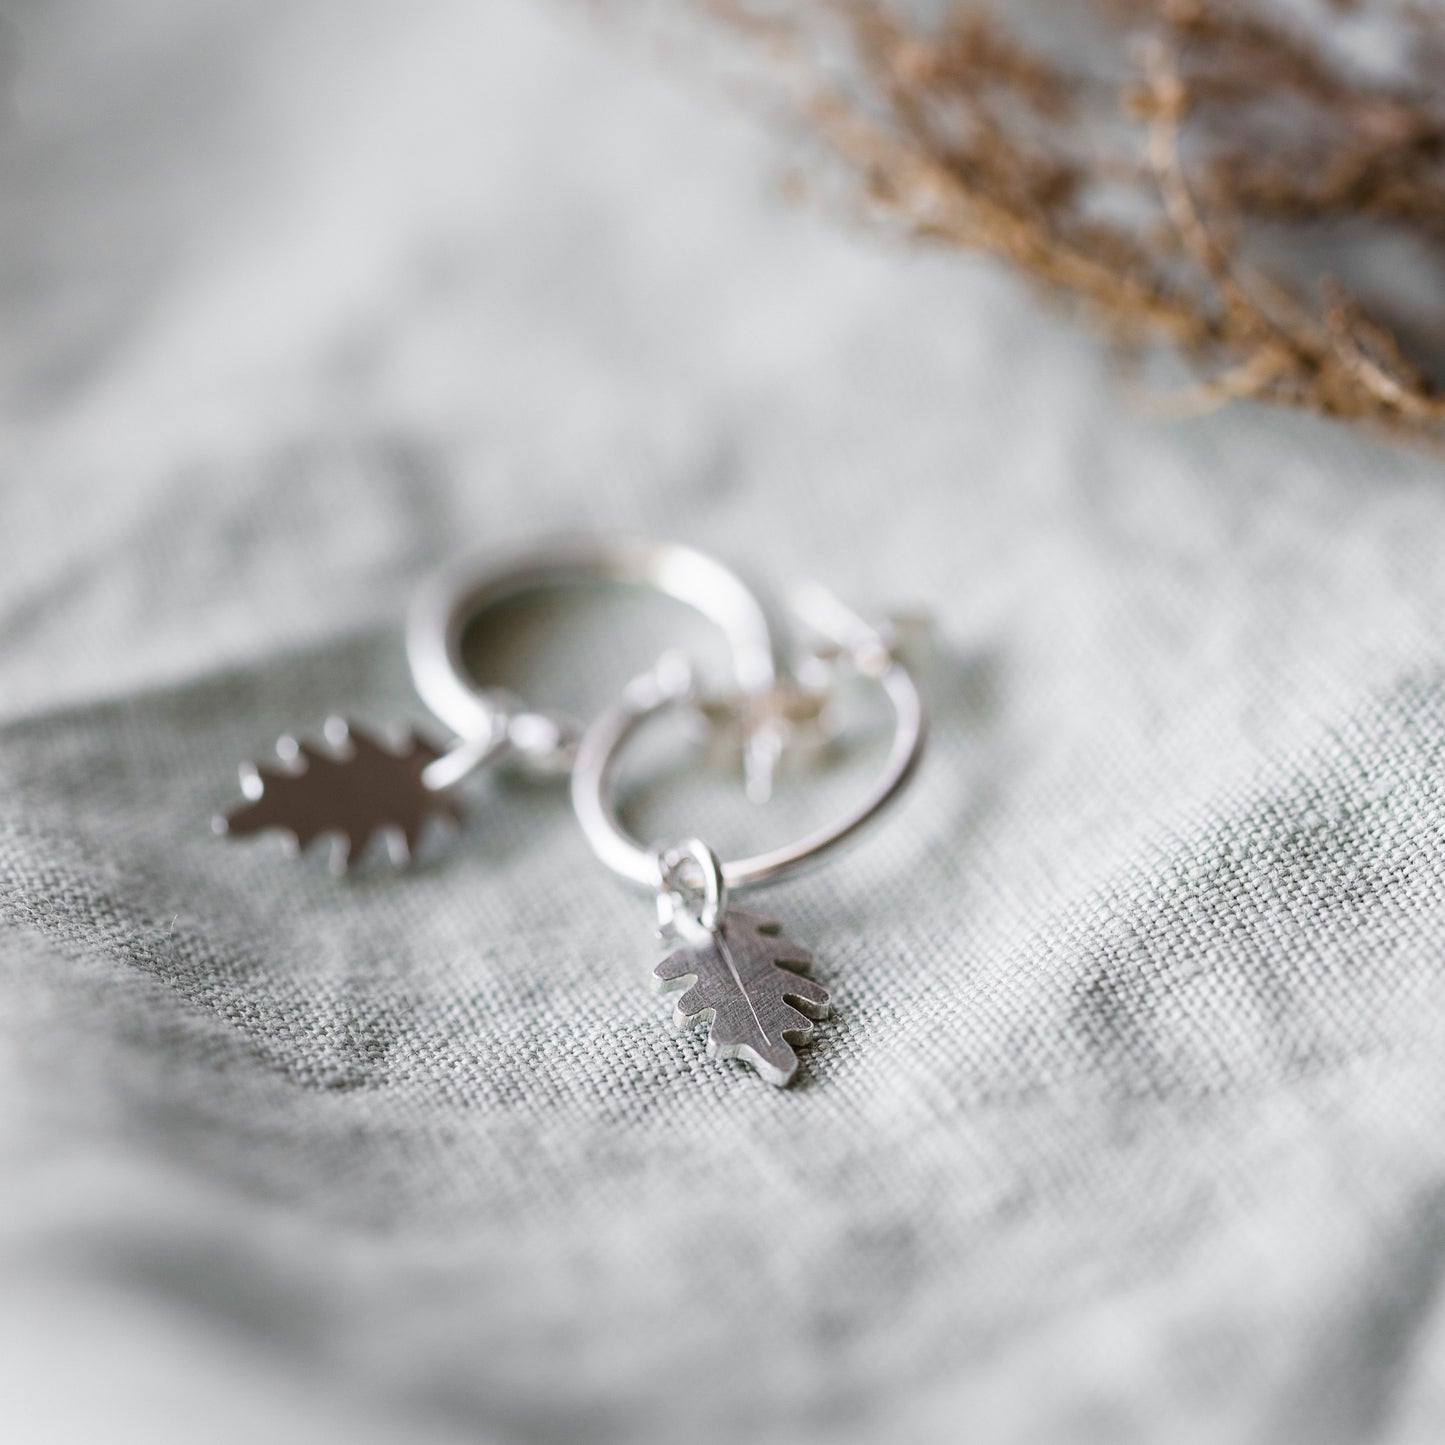 Silver Leaf Hoop Earrings Handmade by Anna Calvert Jewellery in the UK